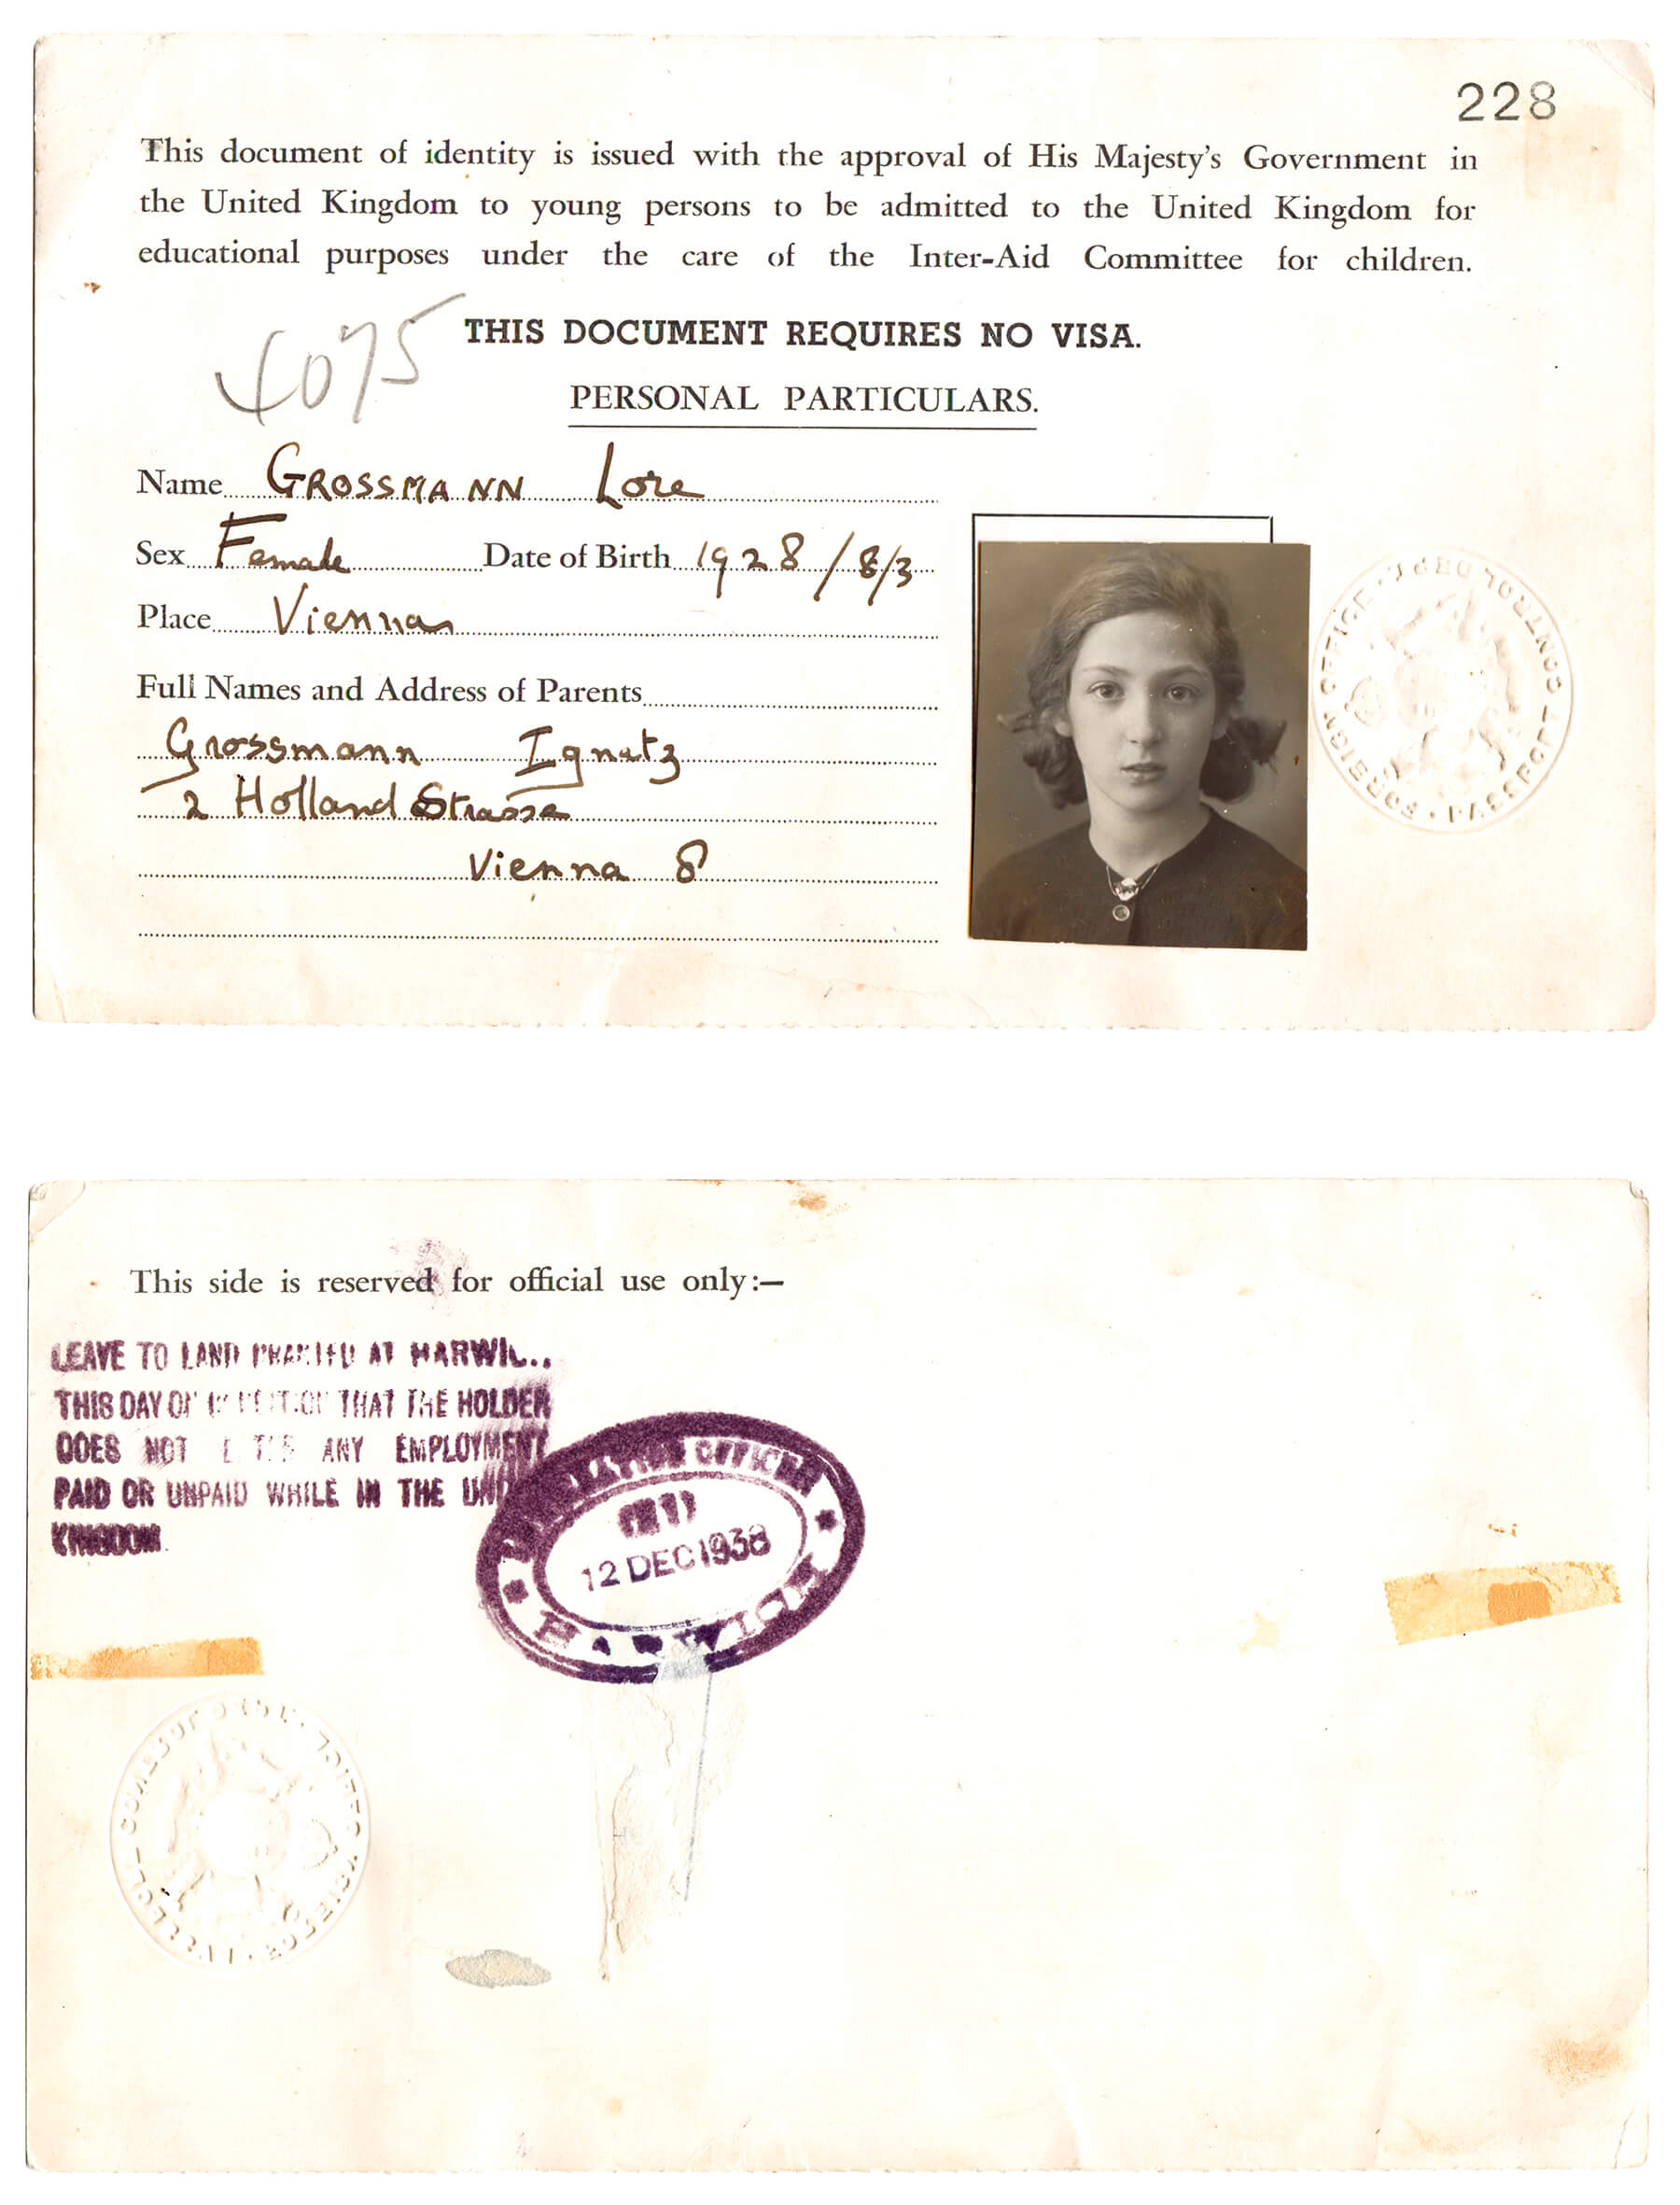 Vorder- und Rückseite des britischen Ausreisedokuments für Lore Segal (Groszmann), 1938, © Lore Segal 